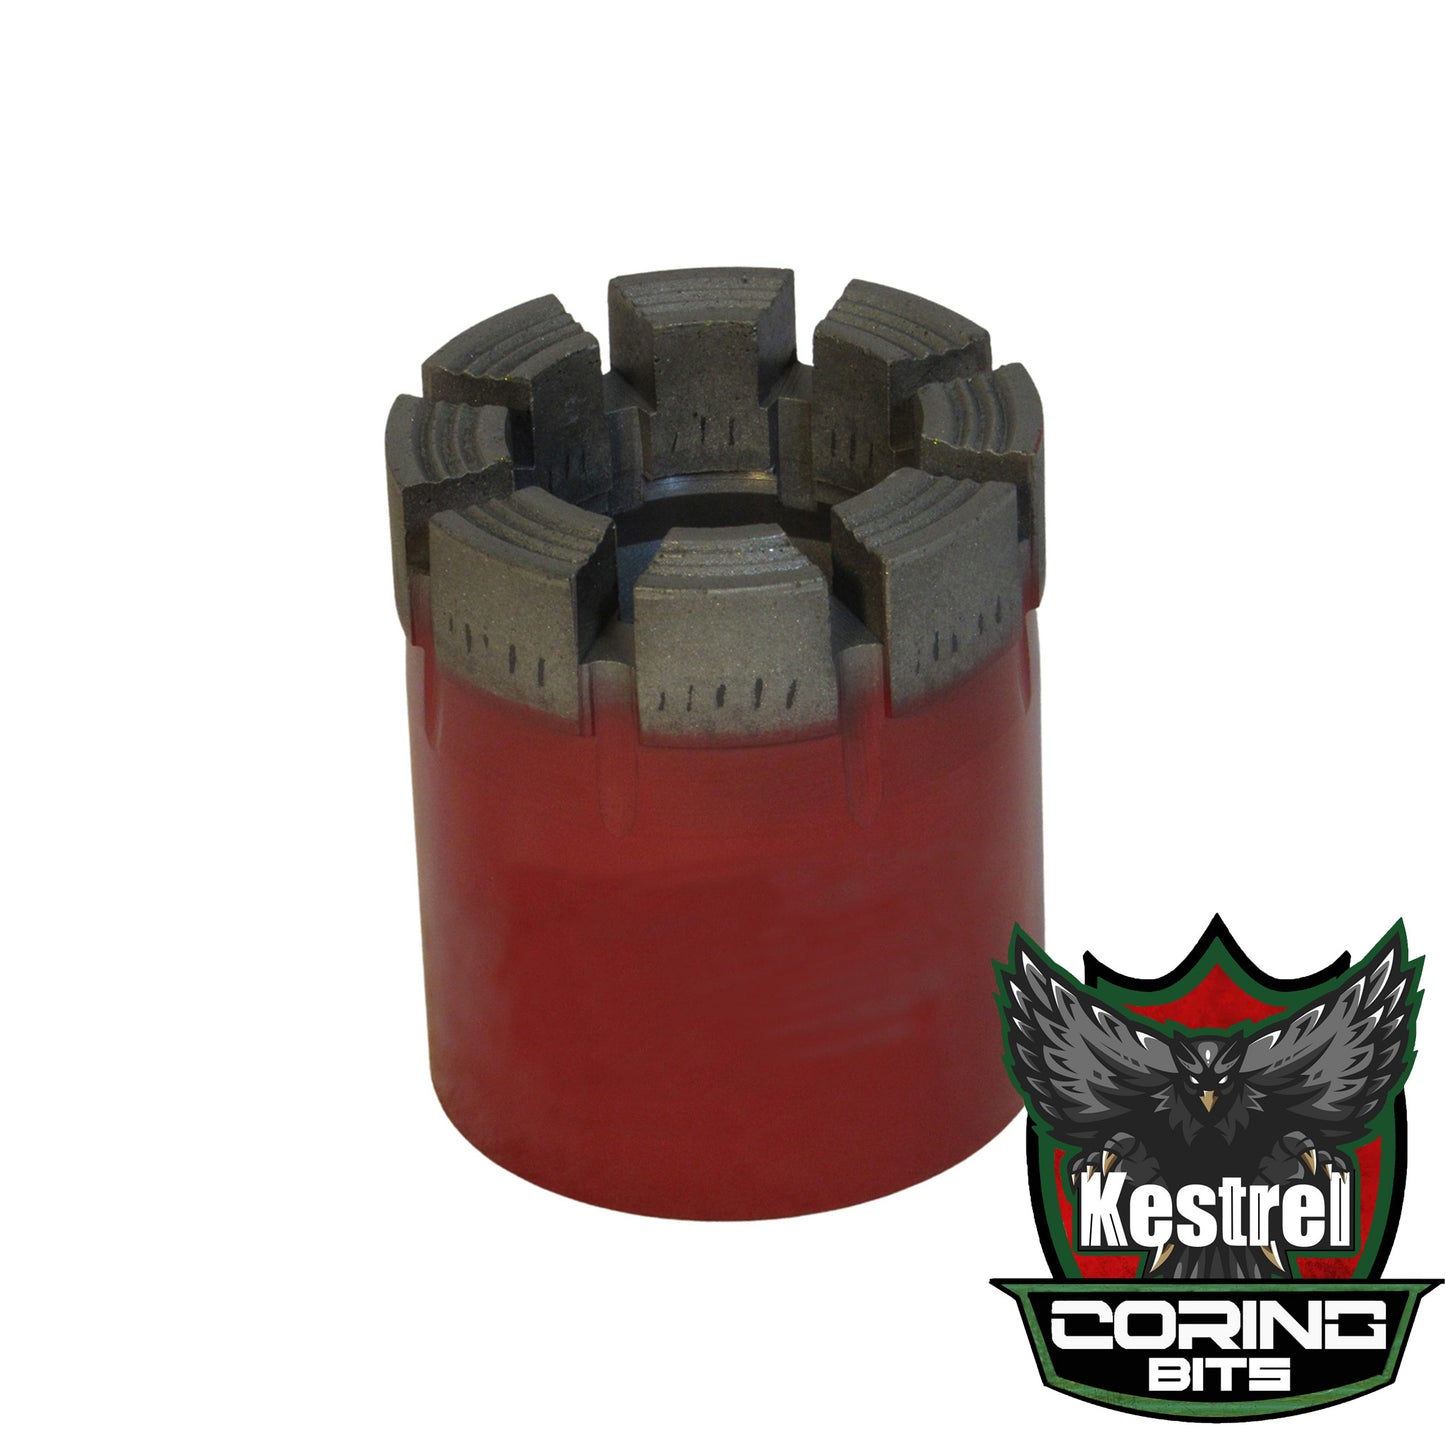 Kestrel 6 - NWL Core Drill Bit - Standard